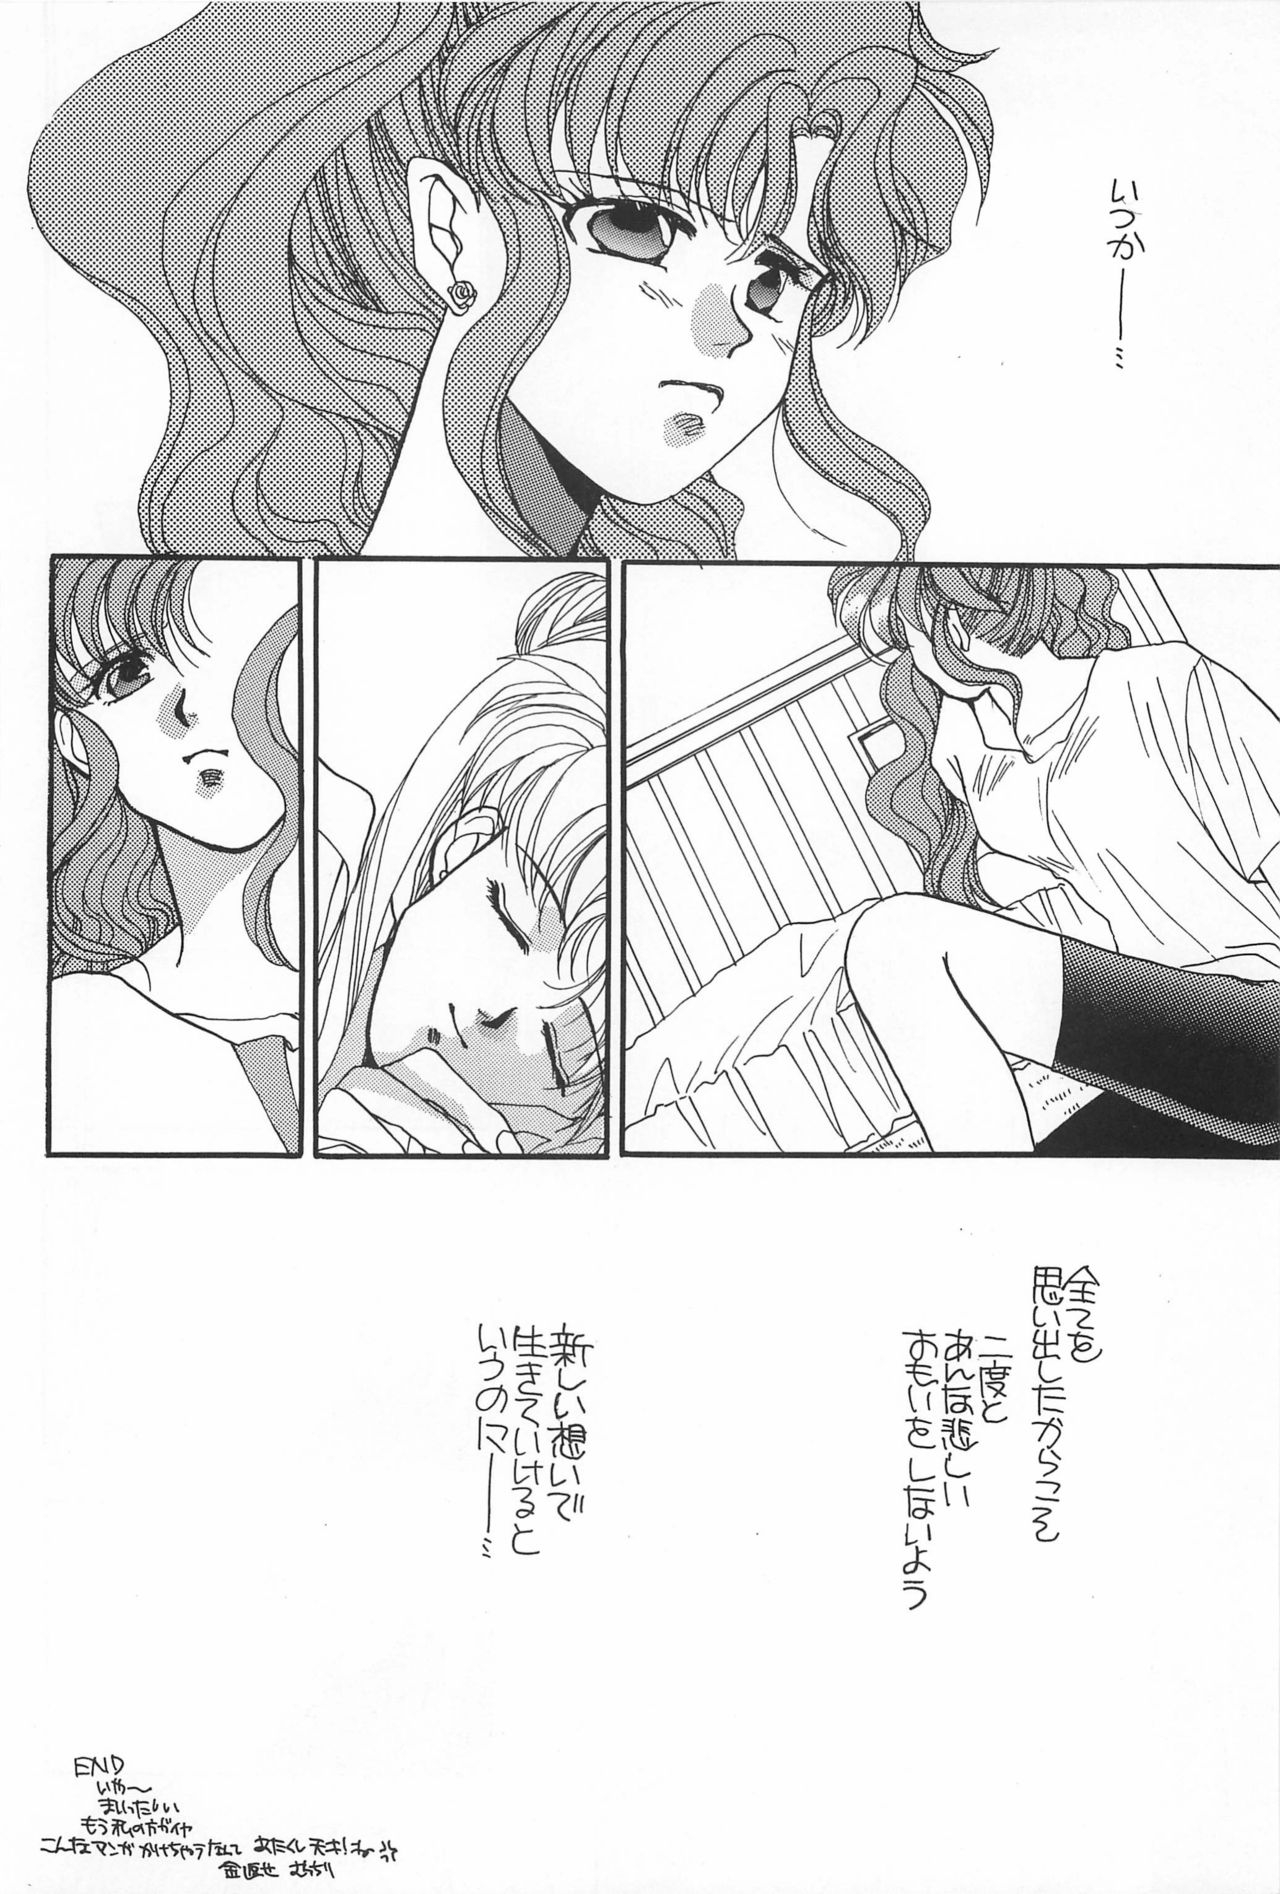 [Hello World (Muttri Moony)] Kaze no You ni Yume no You ni - Sailor Moon Collection (Sailor Moon) 171